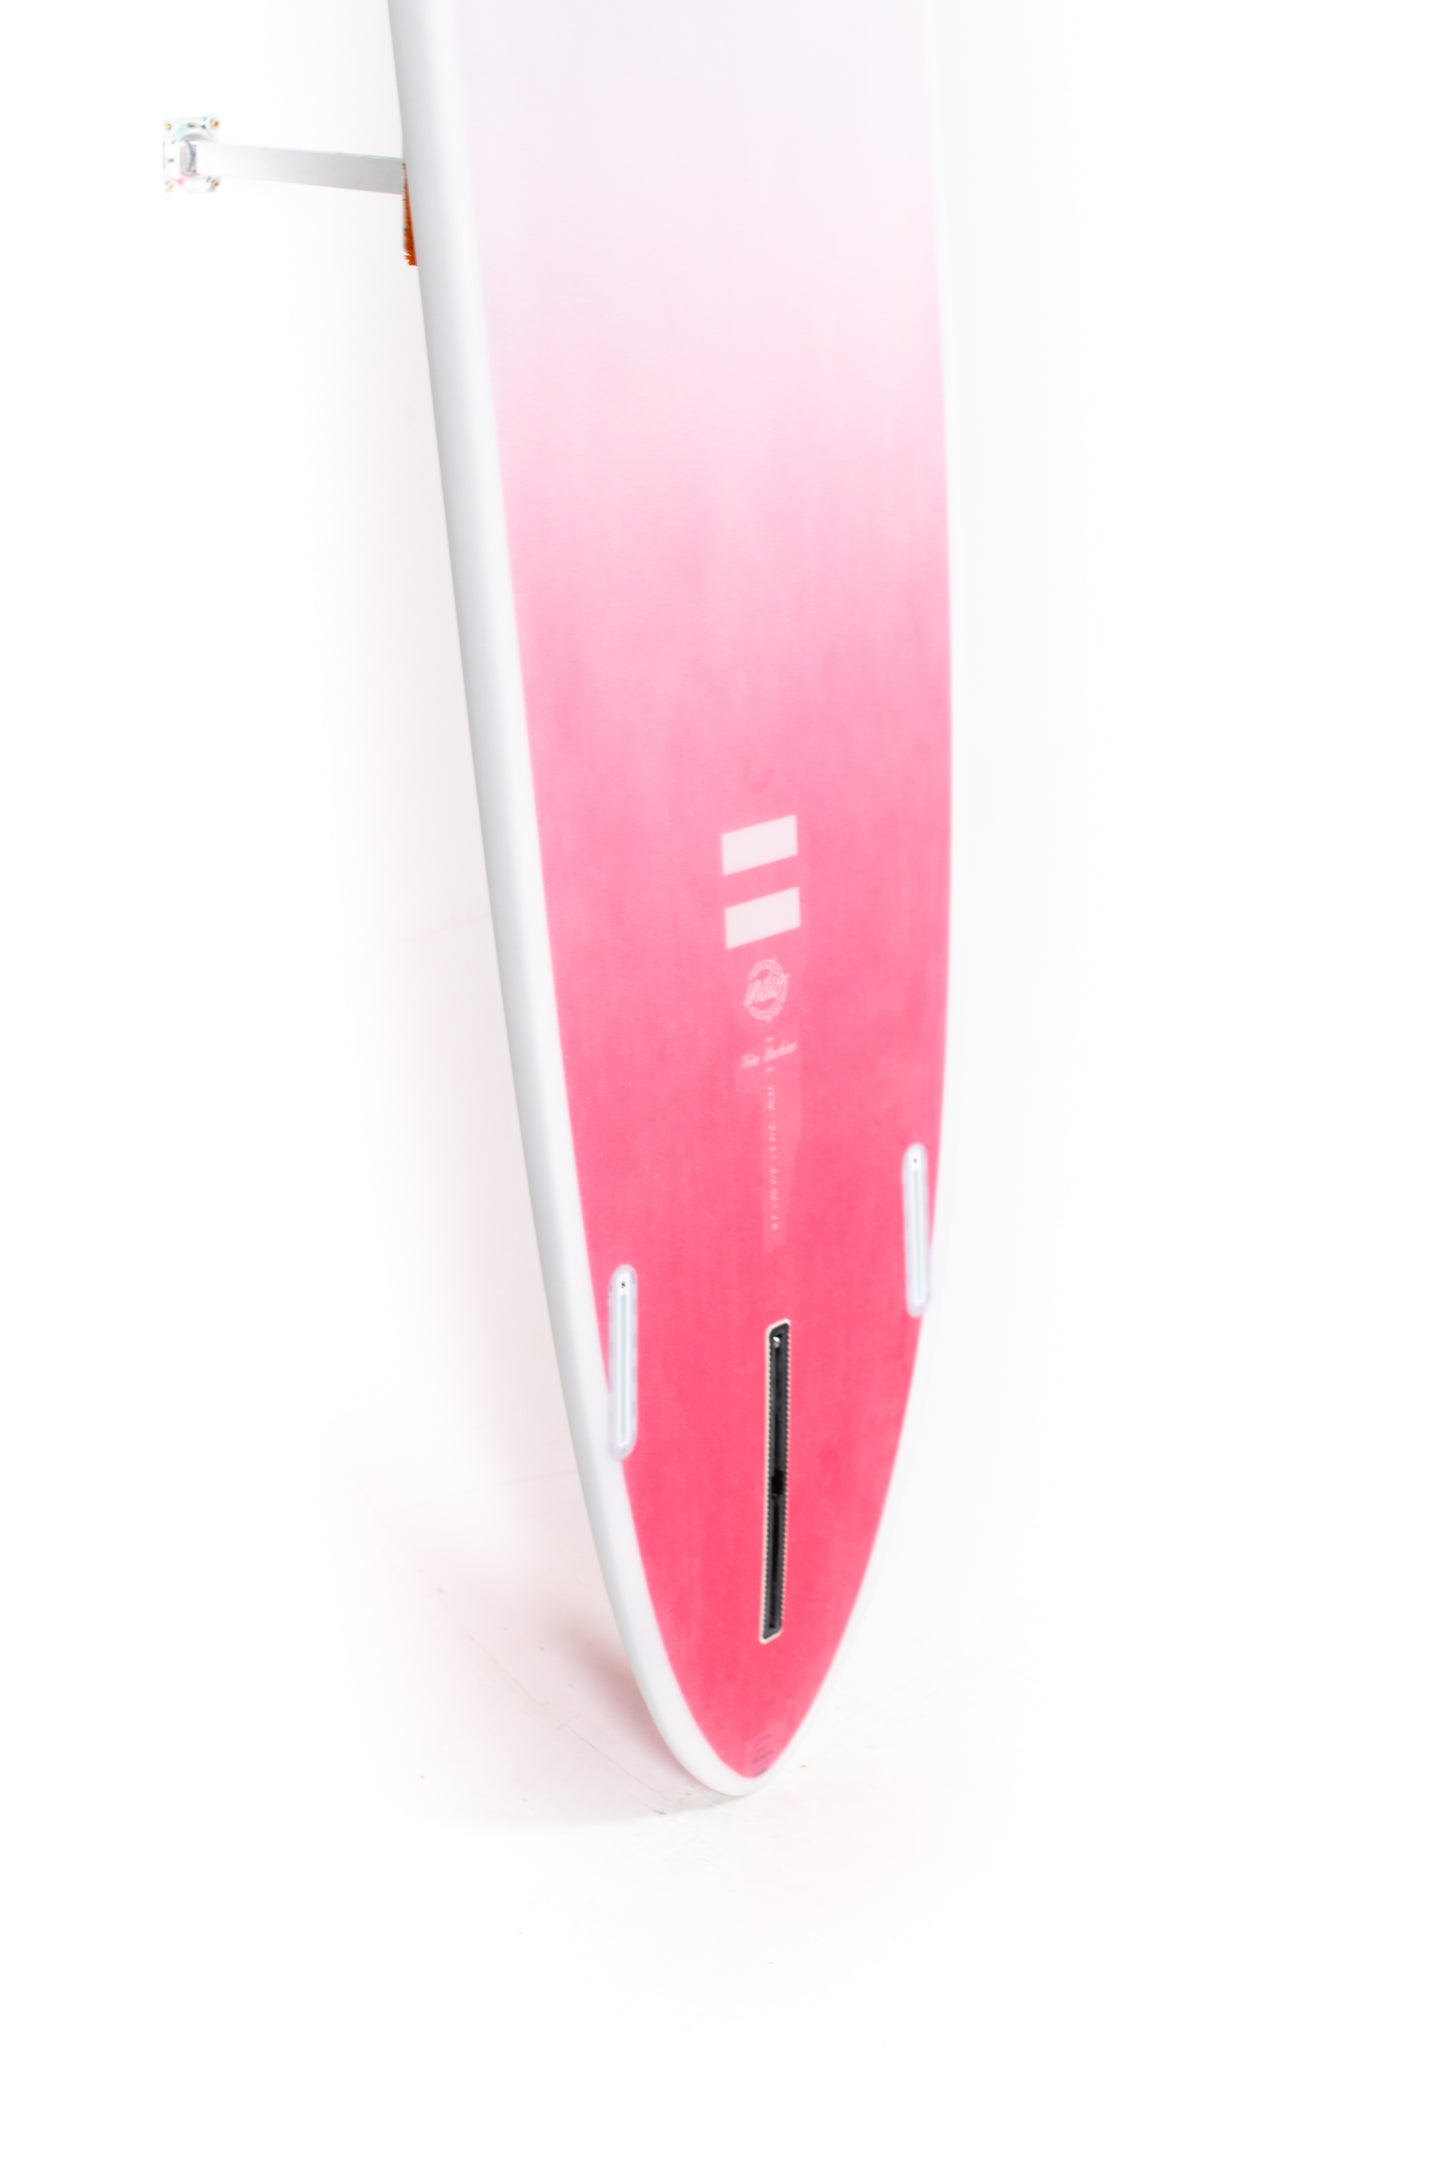 
                  
                    Pukas Surf Shop -  Indio Surfboards - TRIM MACHINE Space 2 - Indio Endurance 9’1” x 21”7/8 x 2”7/8 - 70.2L
                  
                